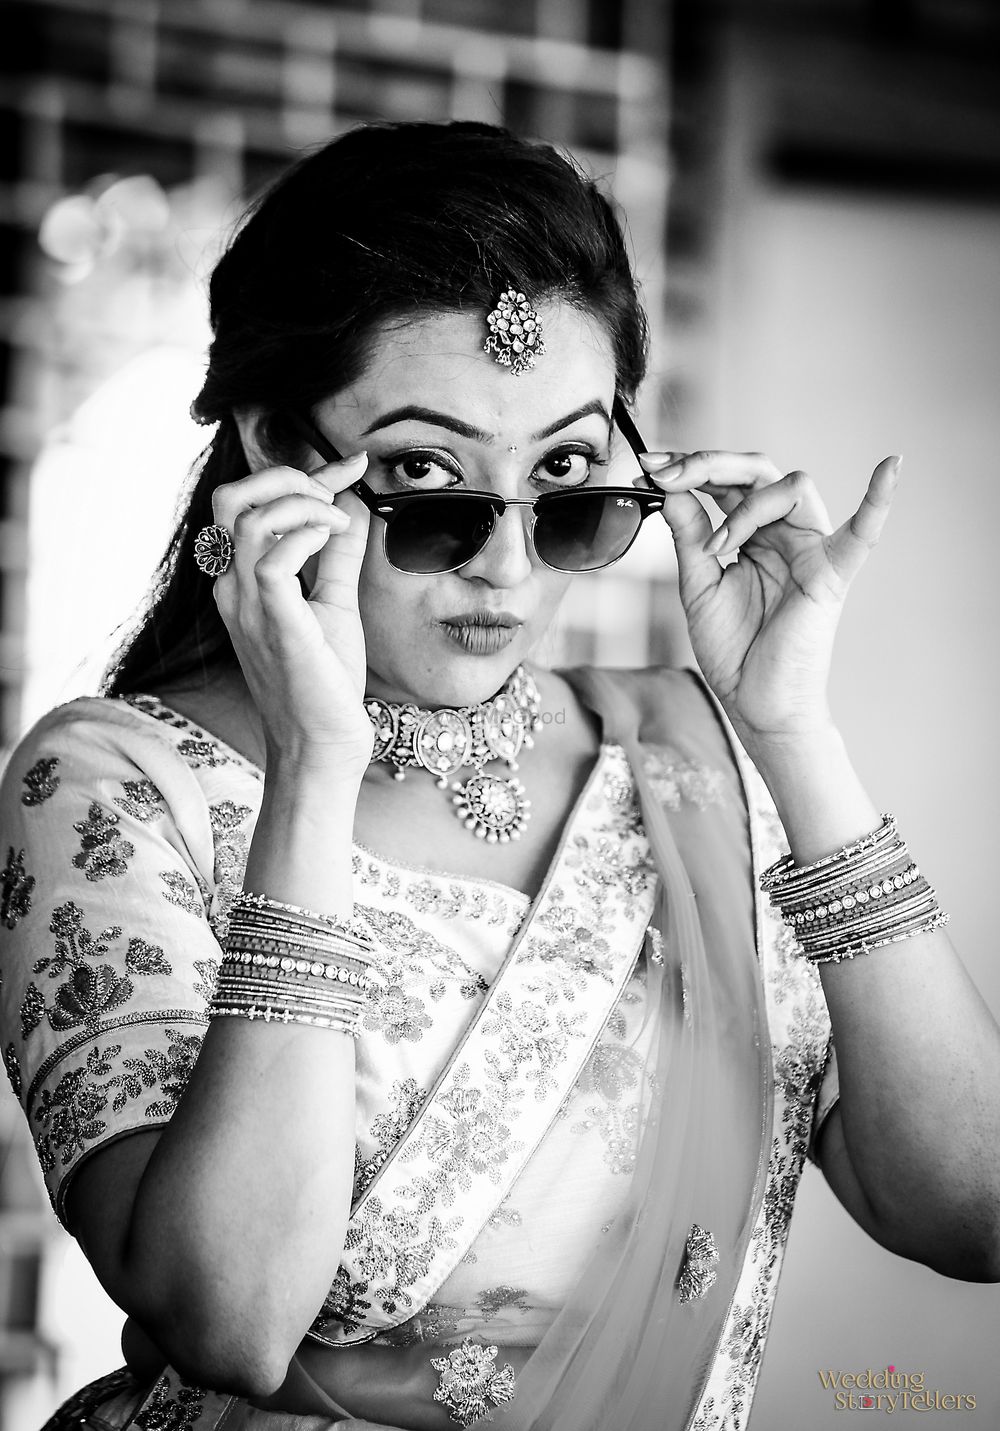 Photo From Priyanshi Viresh - By Wedding Storytellers